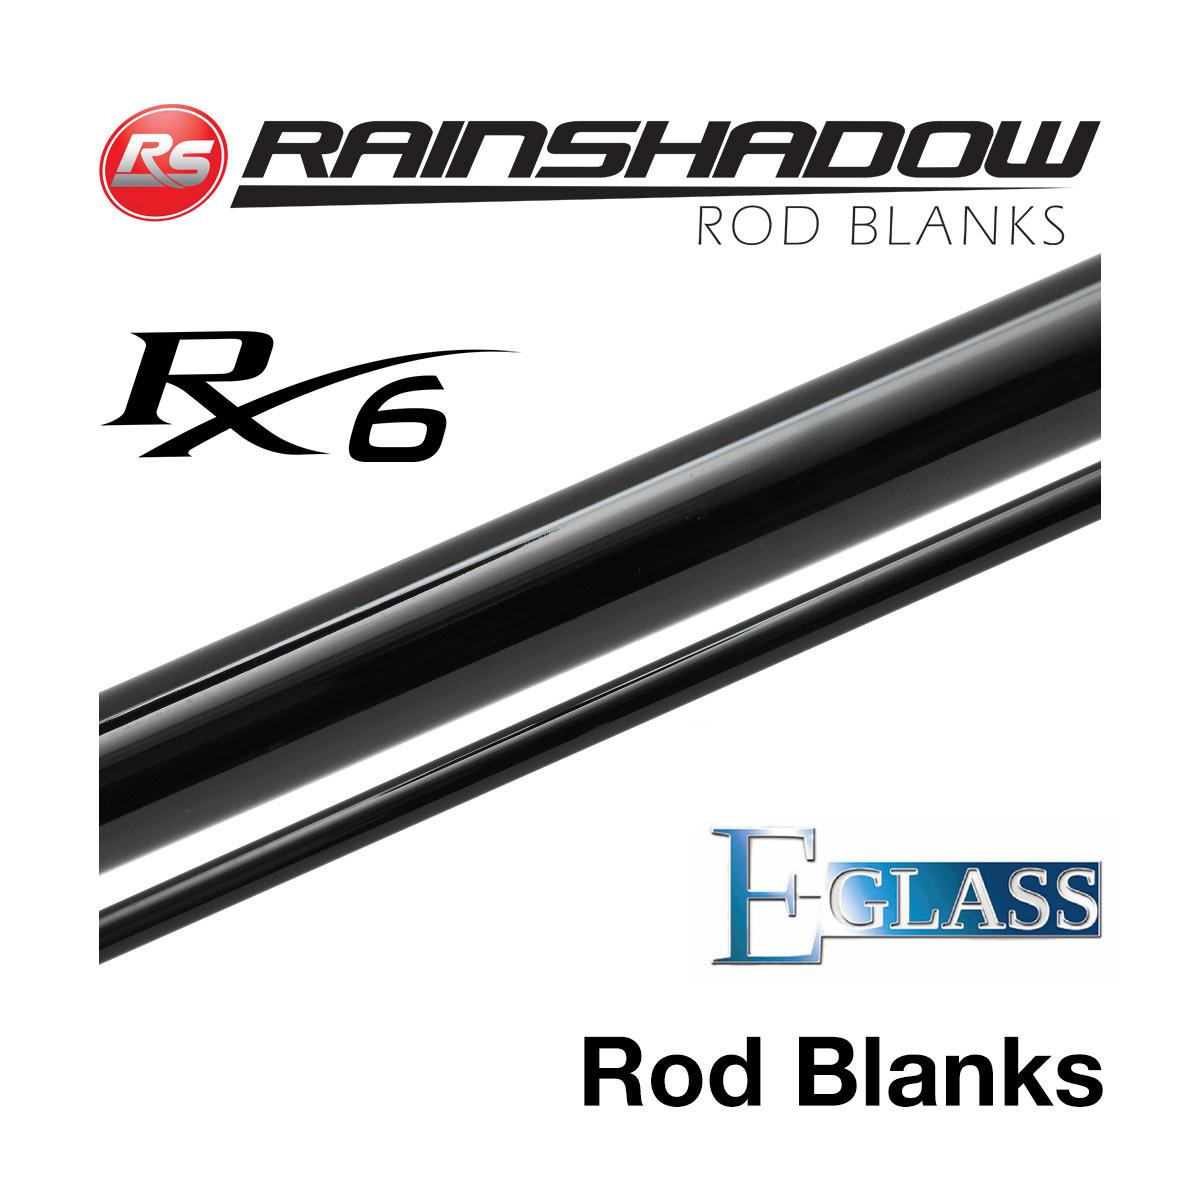 Rainshadow RX6 E Glass Rod Blanks